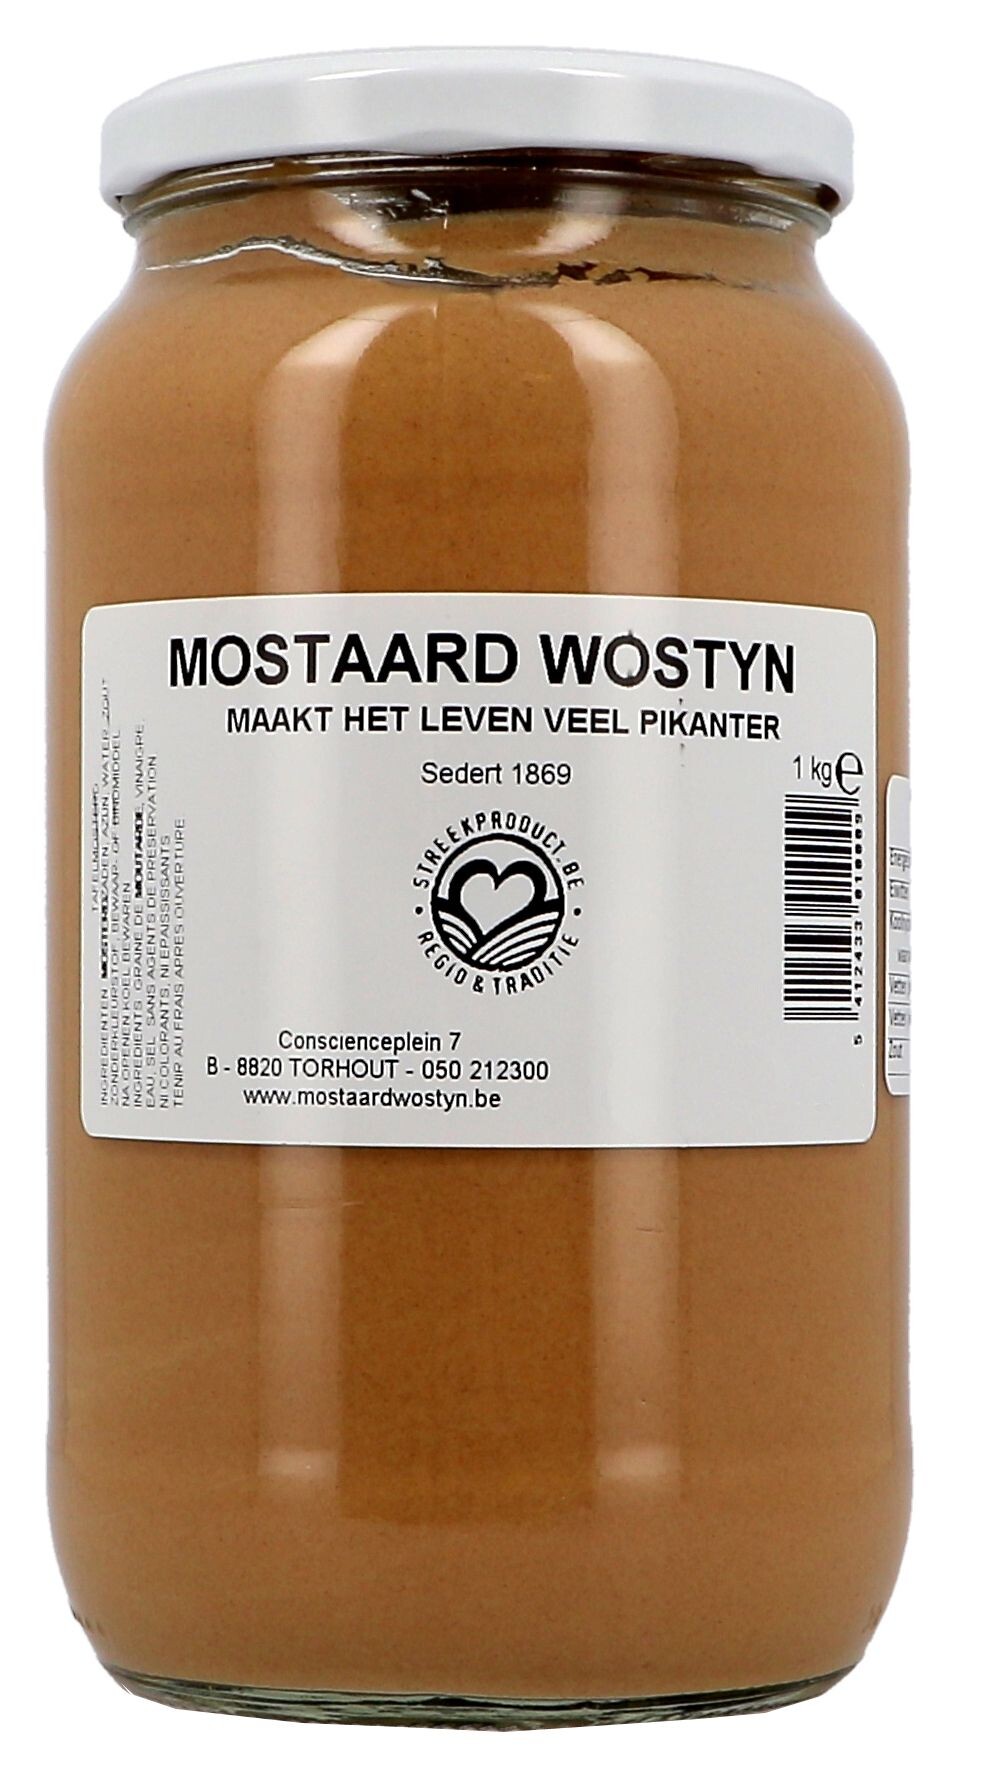 Mustard Mostaard Wostyn 1kg jar (Sauzen)